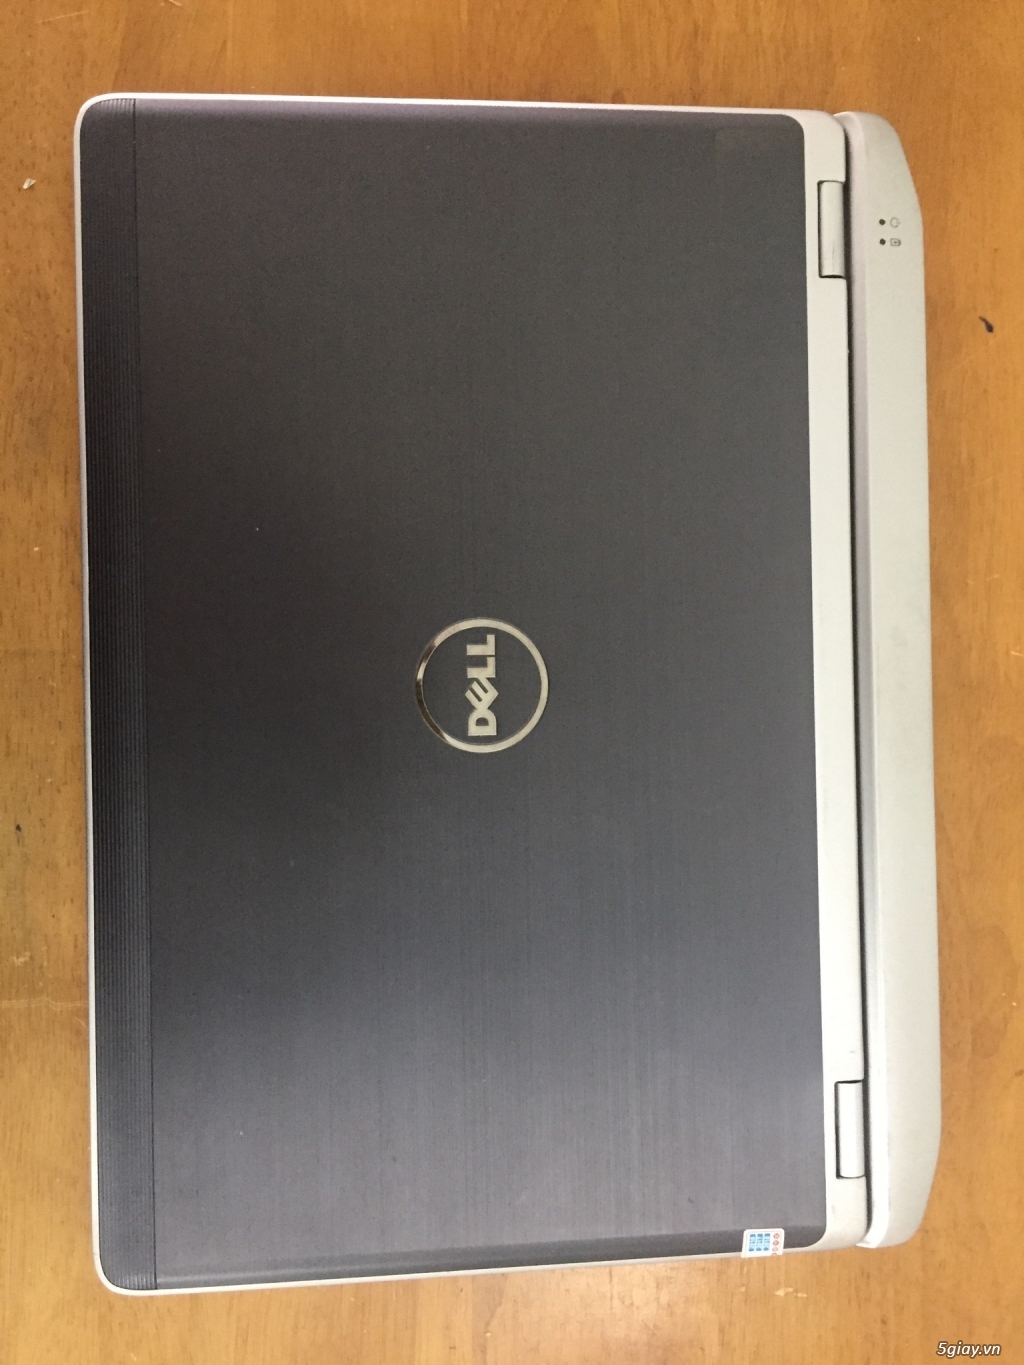 Cần bán Dell Latitude E6220 xách tay giá rẻ, laptop 12inch nhỏ gọn. - 1